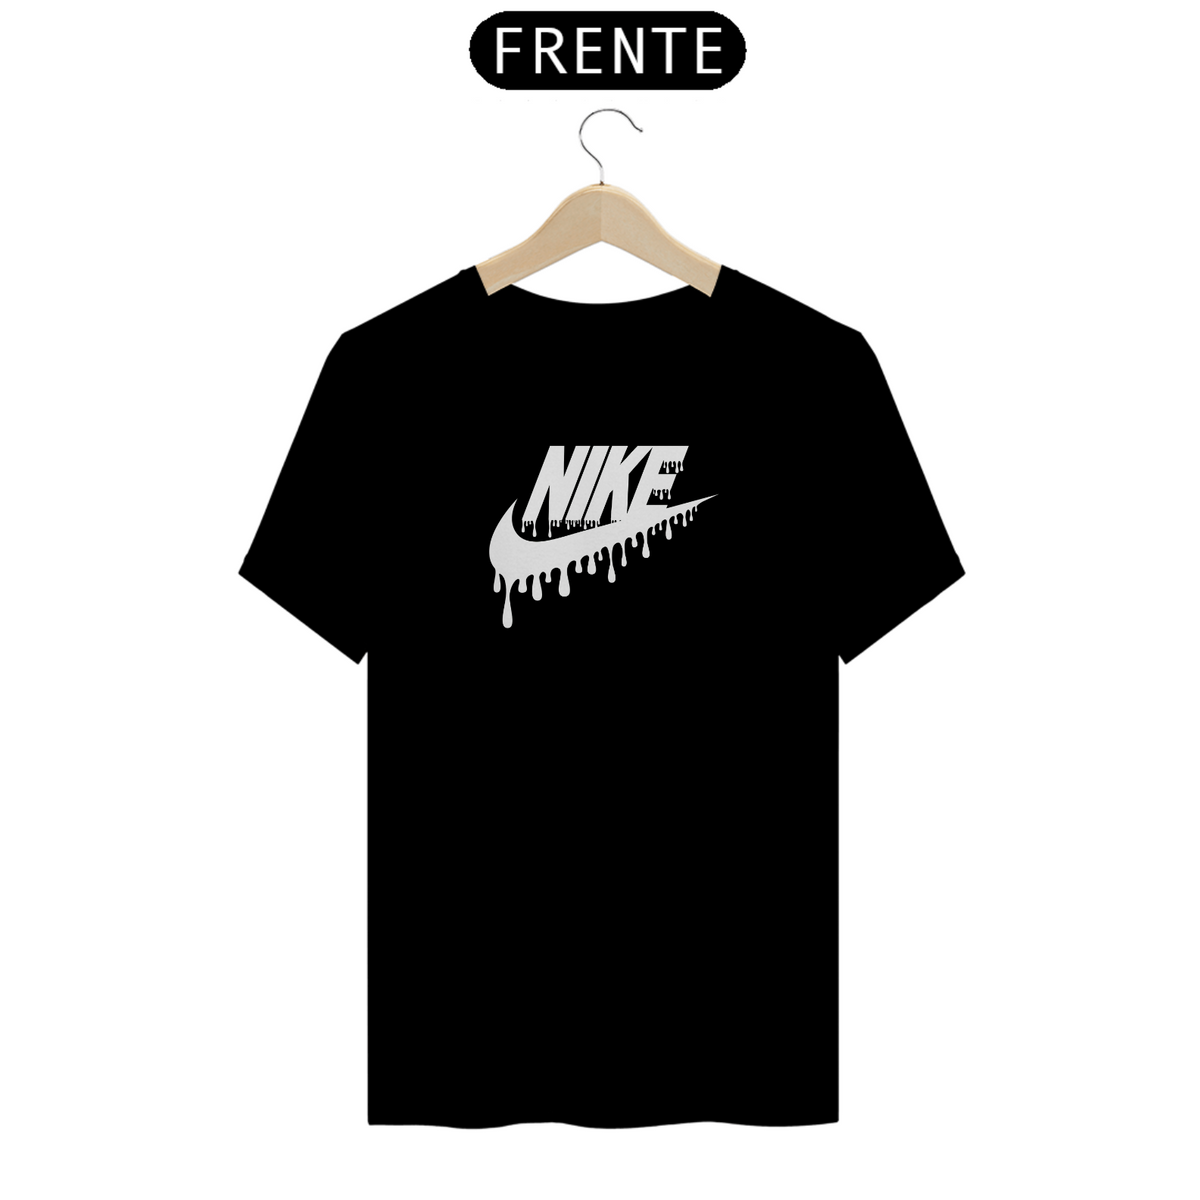 Nome do produto: Camiseta Nike Original